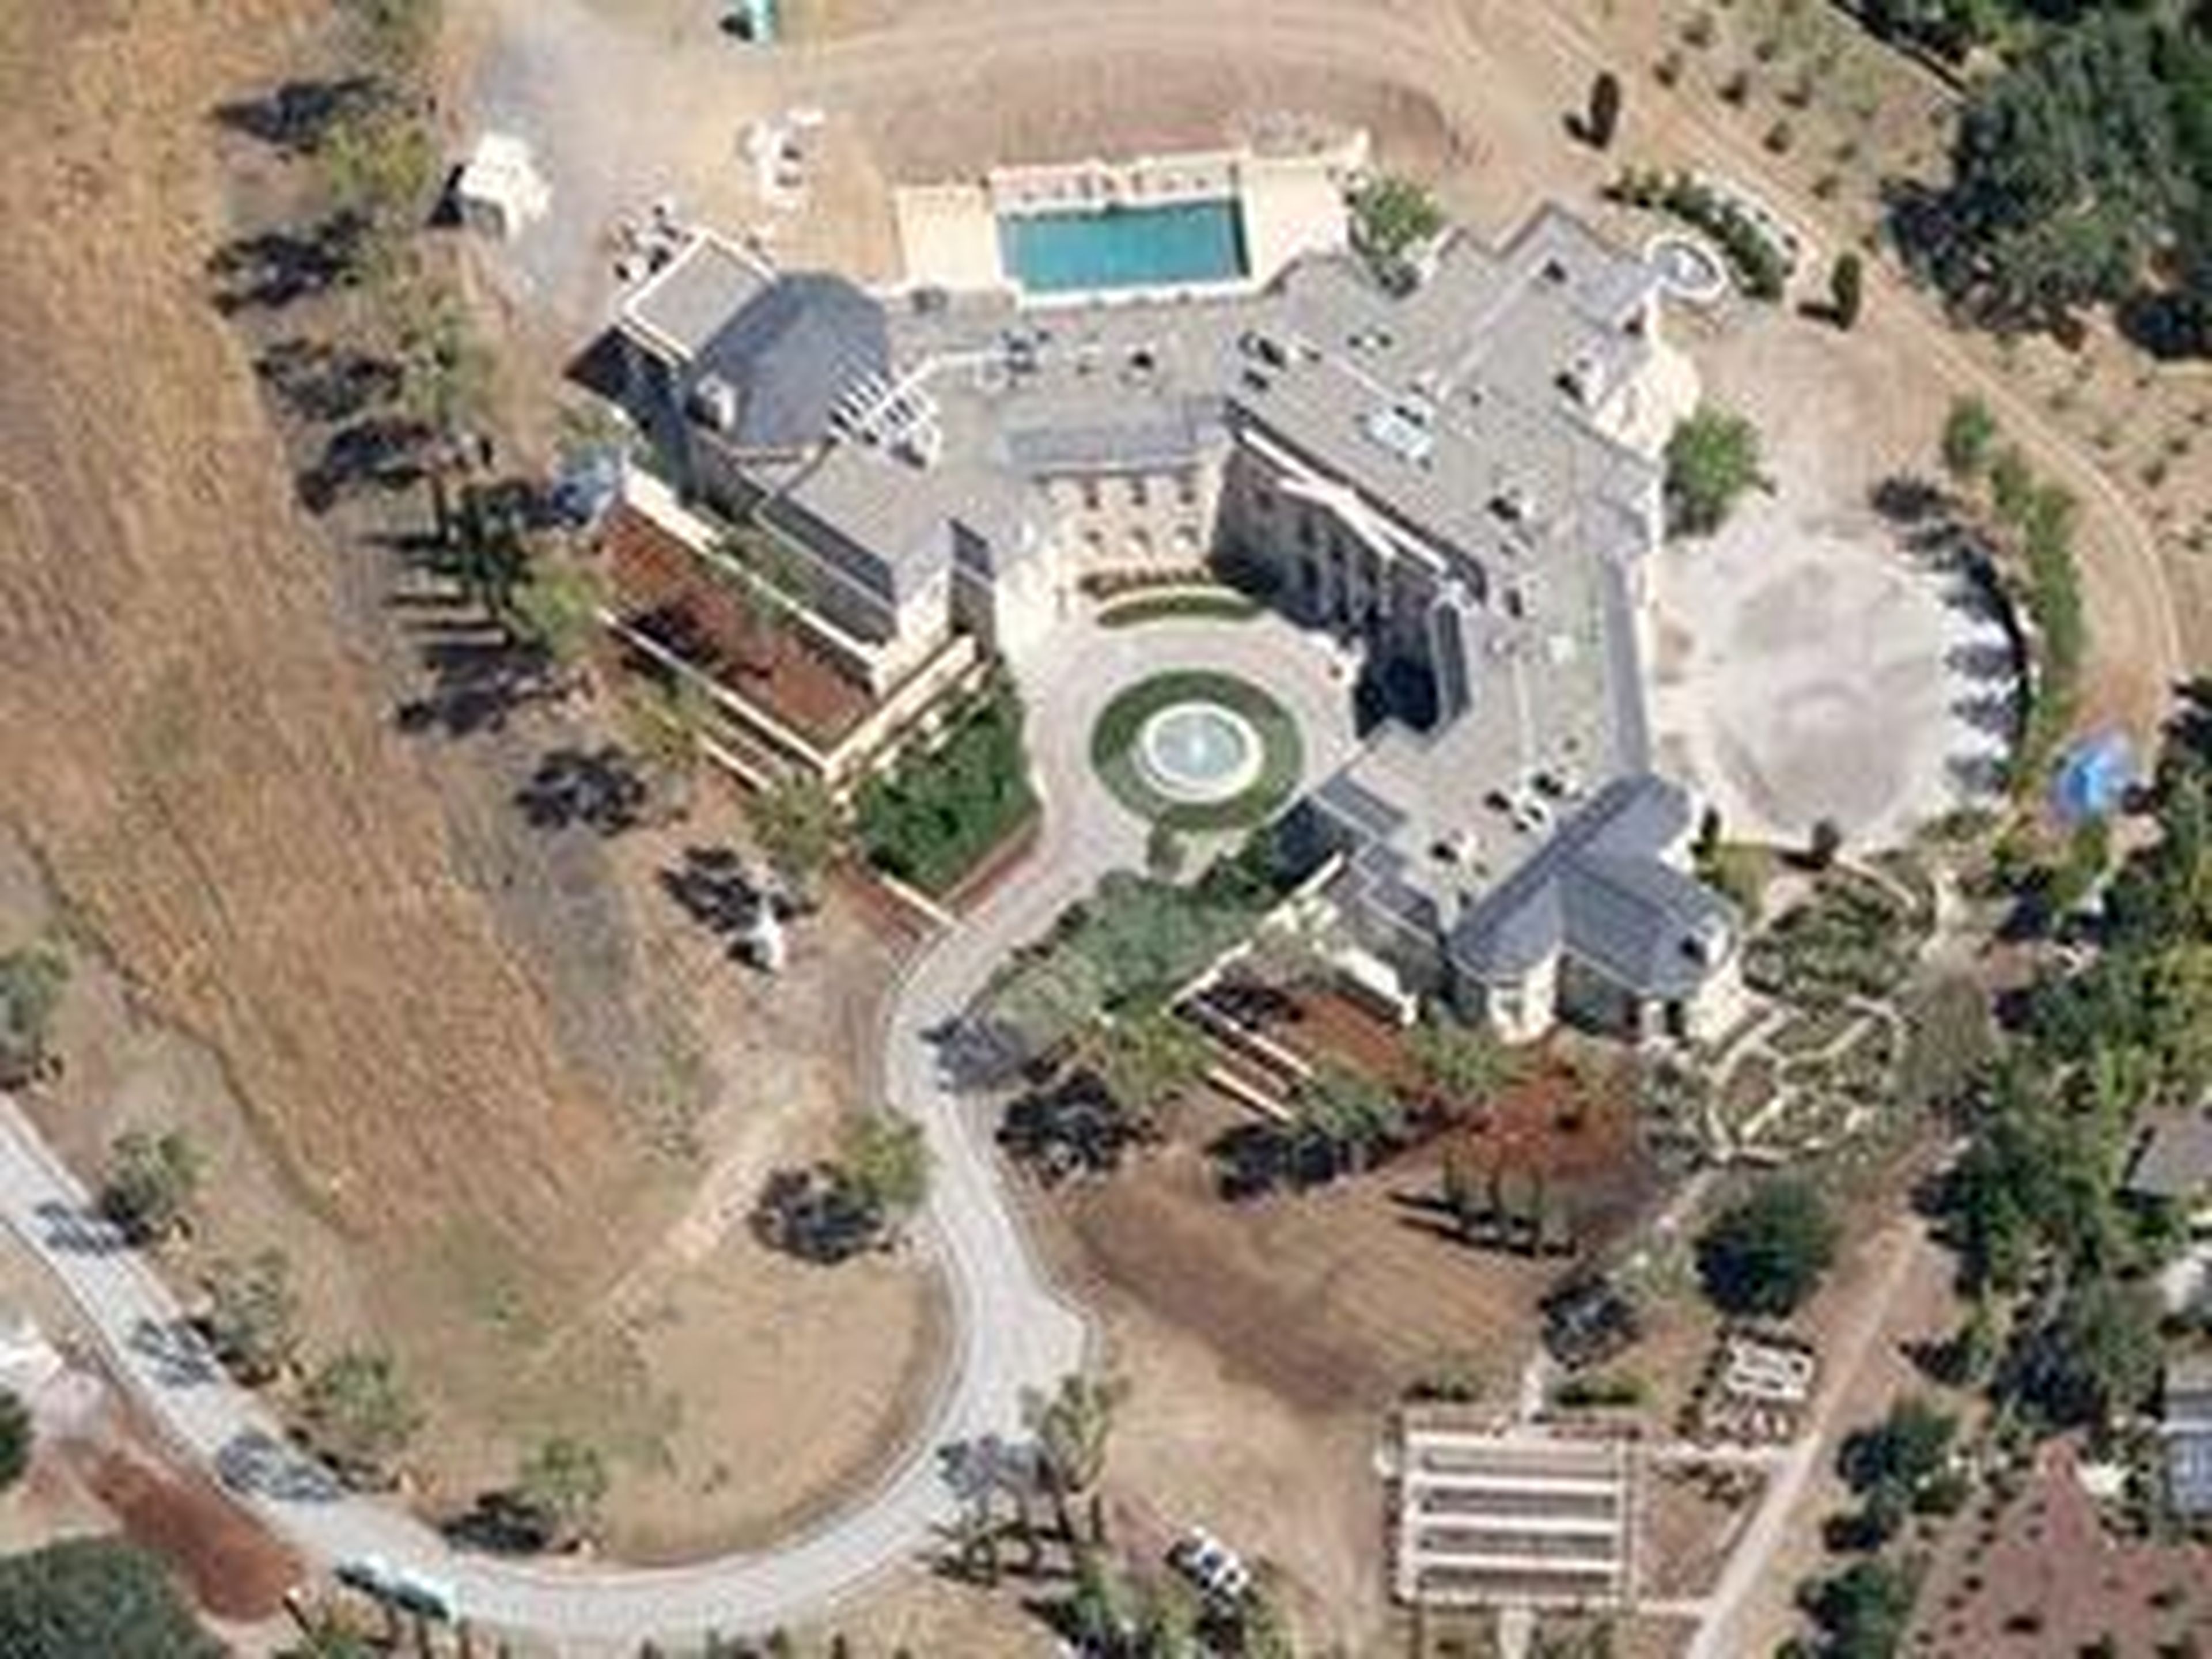 [RE] Yuri Milner, un inversionista de Facebook, Twitter y Spotify, compró esta mansión en Silicon Valley por 100 millones de dólares en 2011.